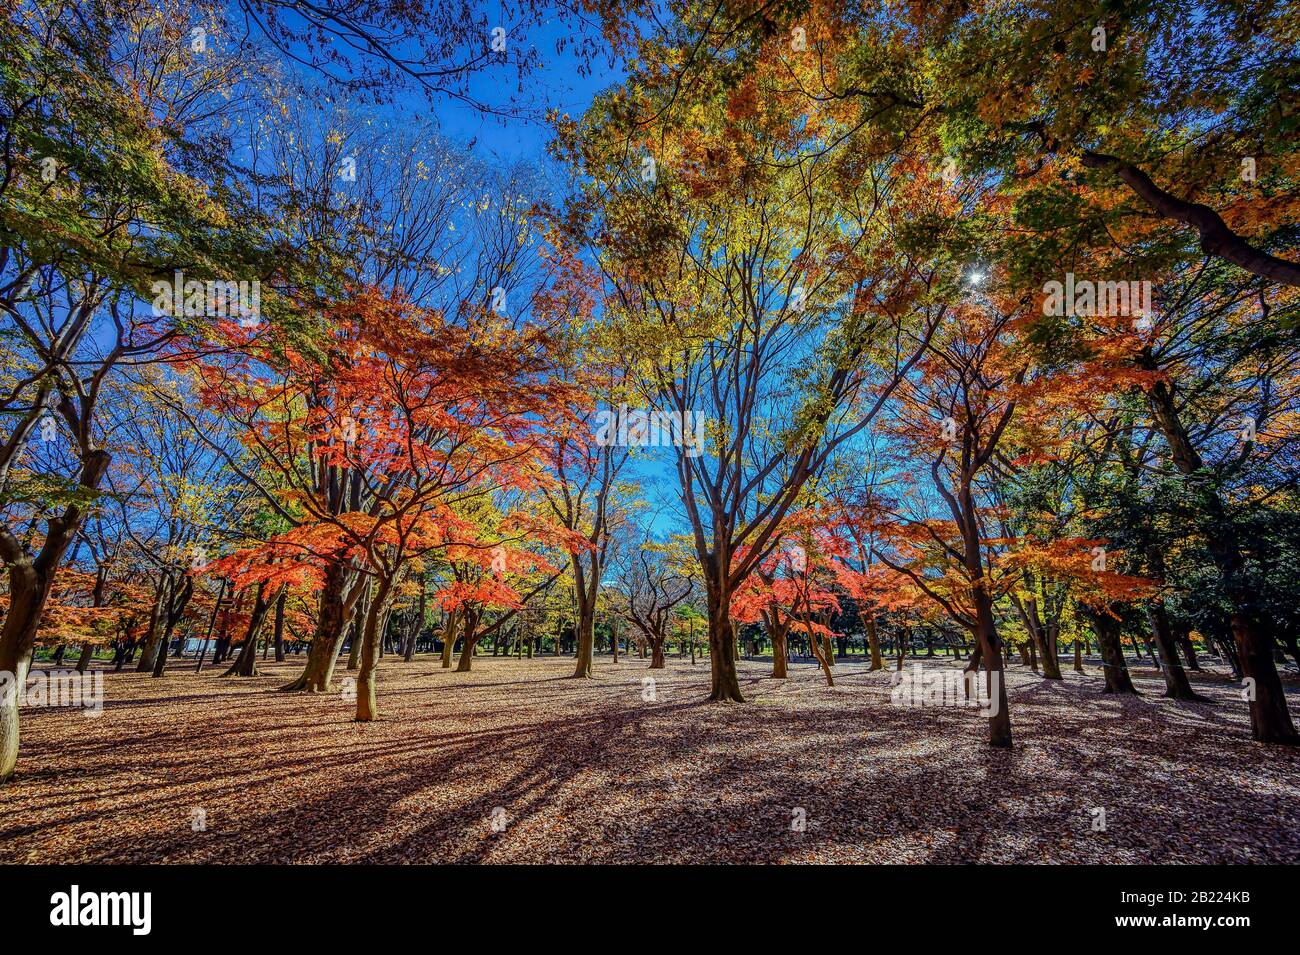 Japanische Maples und Gingko-Bäume verleihen einem Park in Tokio, Japan Herbstfarben Stockfoto